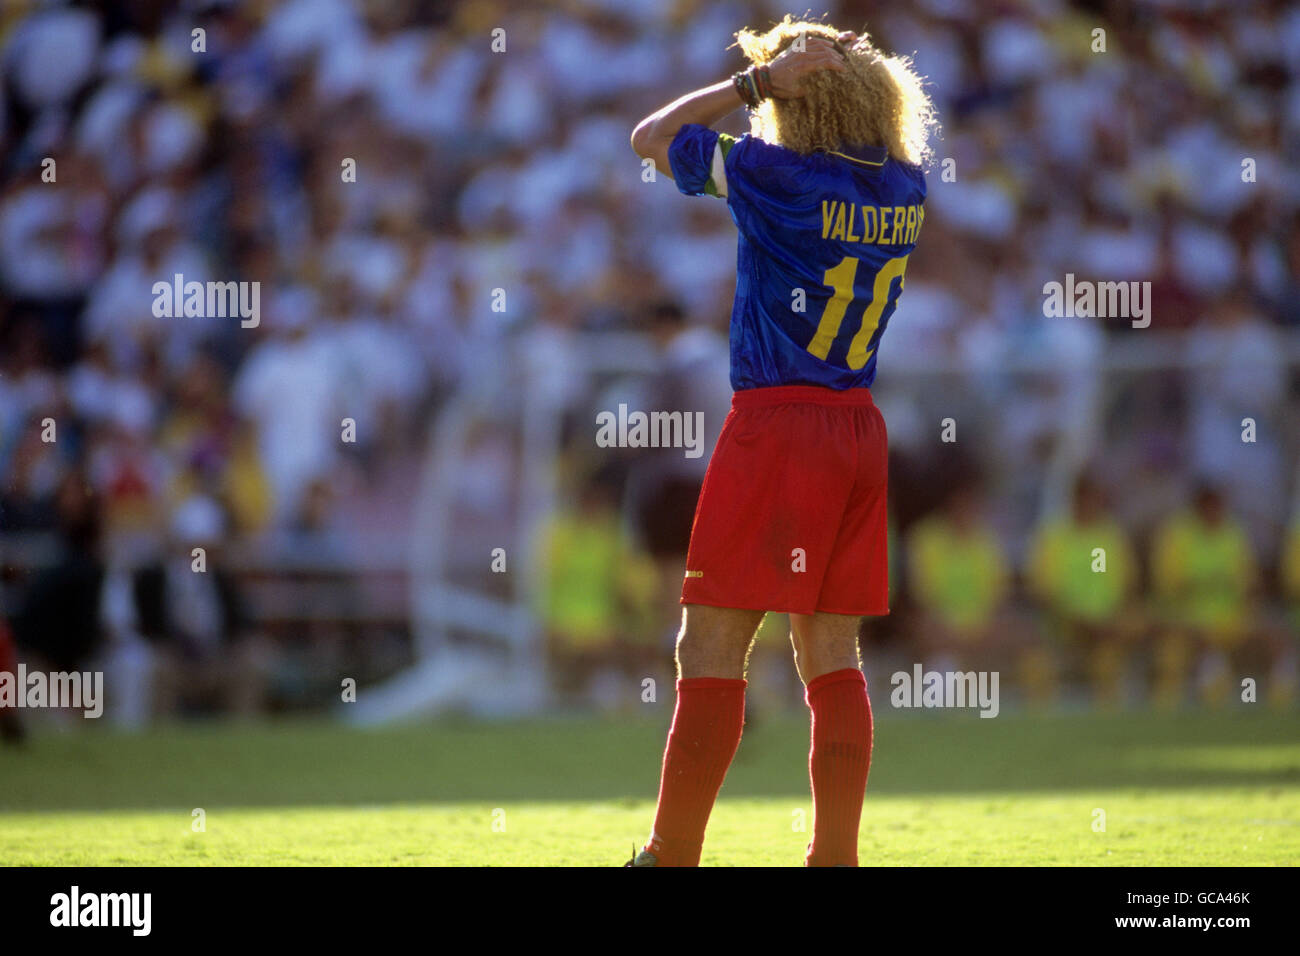 Football - coupe du monde de la FIFA USA 1994 - Groupe A - Colombie / Roumanie - Rose Bowl, Pasadena, le capitaine colombien Carlos Valderrama ne peut pas cacher sa déception comme son sentier latéral Roumanie par trois buts à un. Banque D'Images